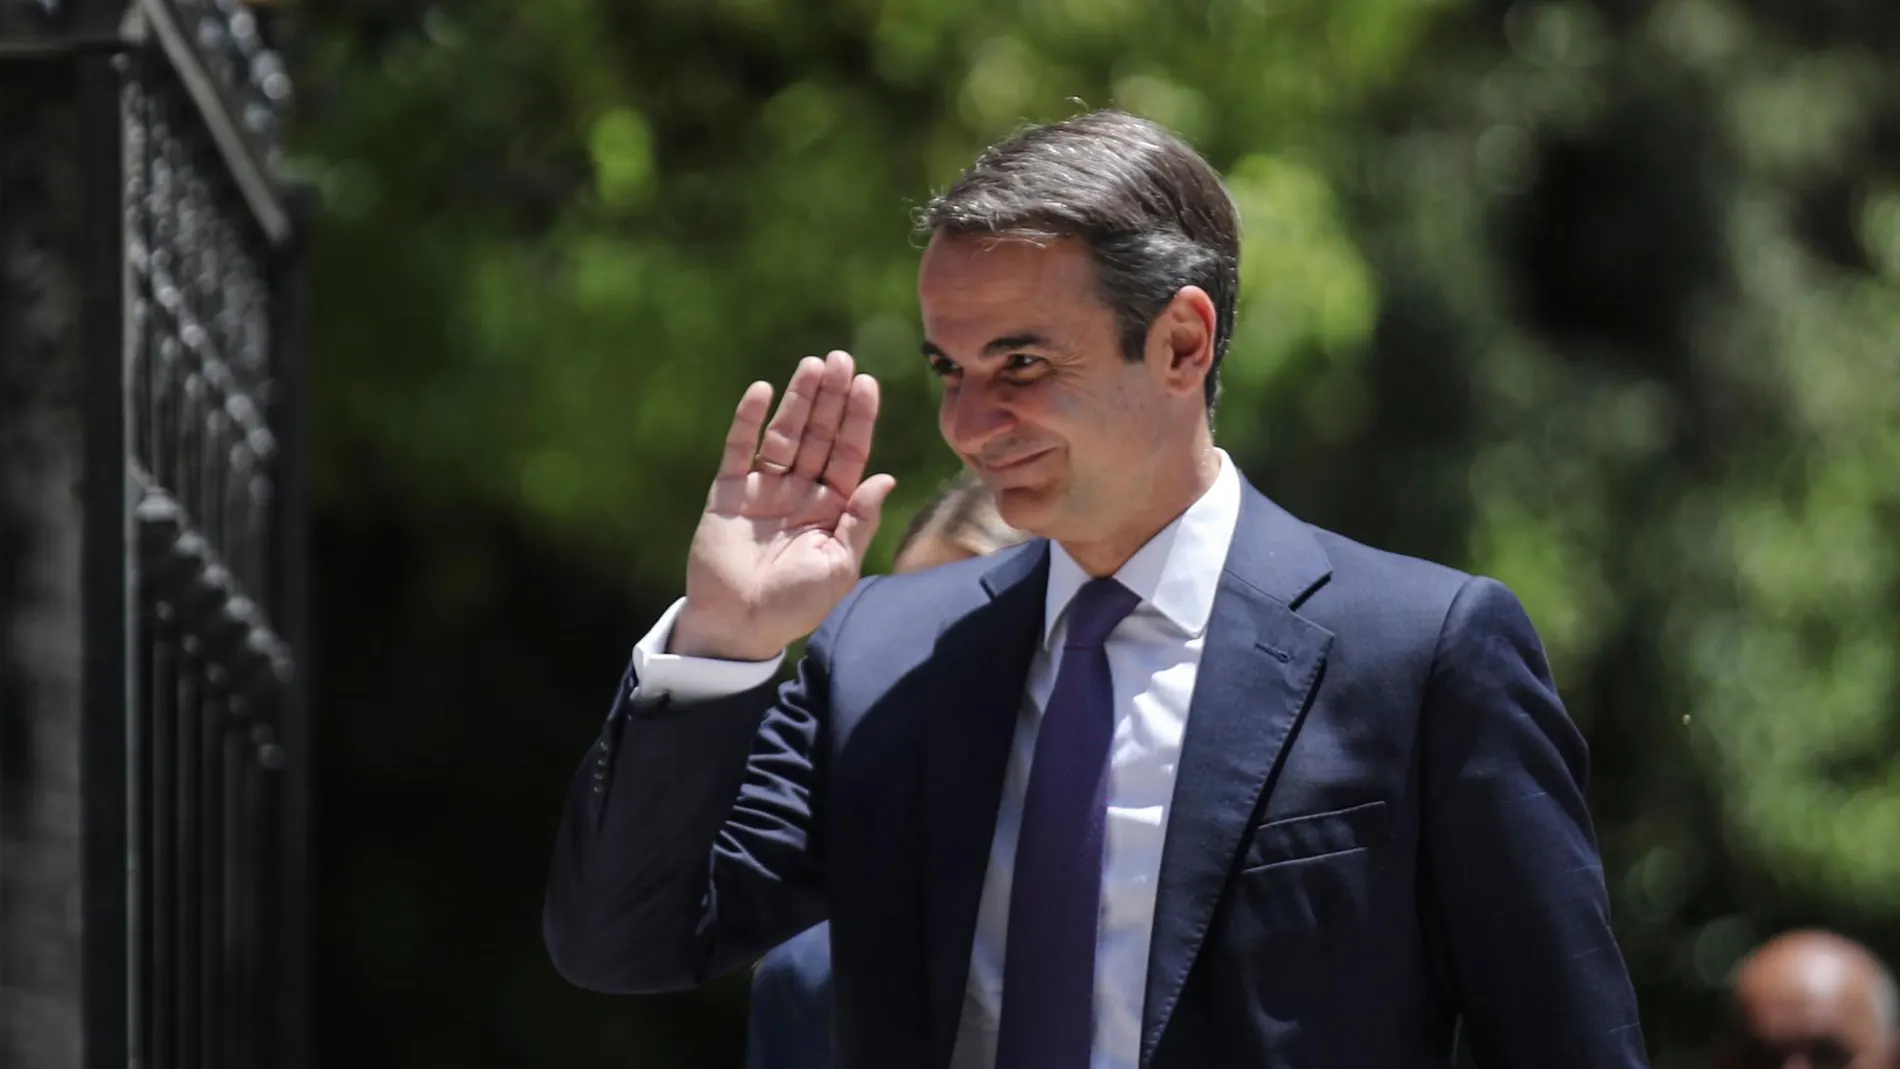 El recién nombrado primer ministro griego, Kyriakos Mitsotakis, saluda después de su ceremonia de investidura, en el Palacio Presidencial en Atenas/ AP